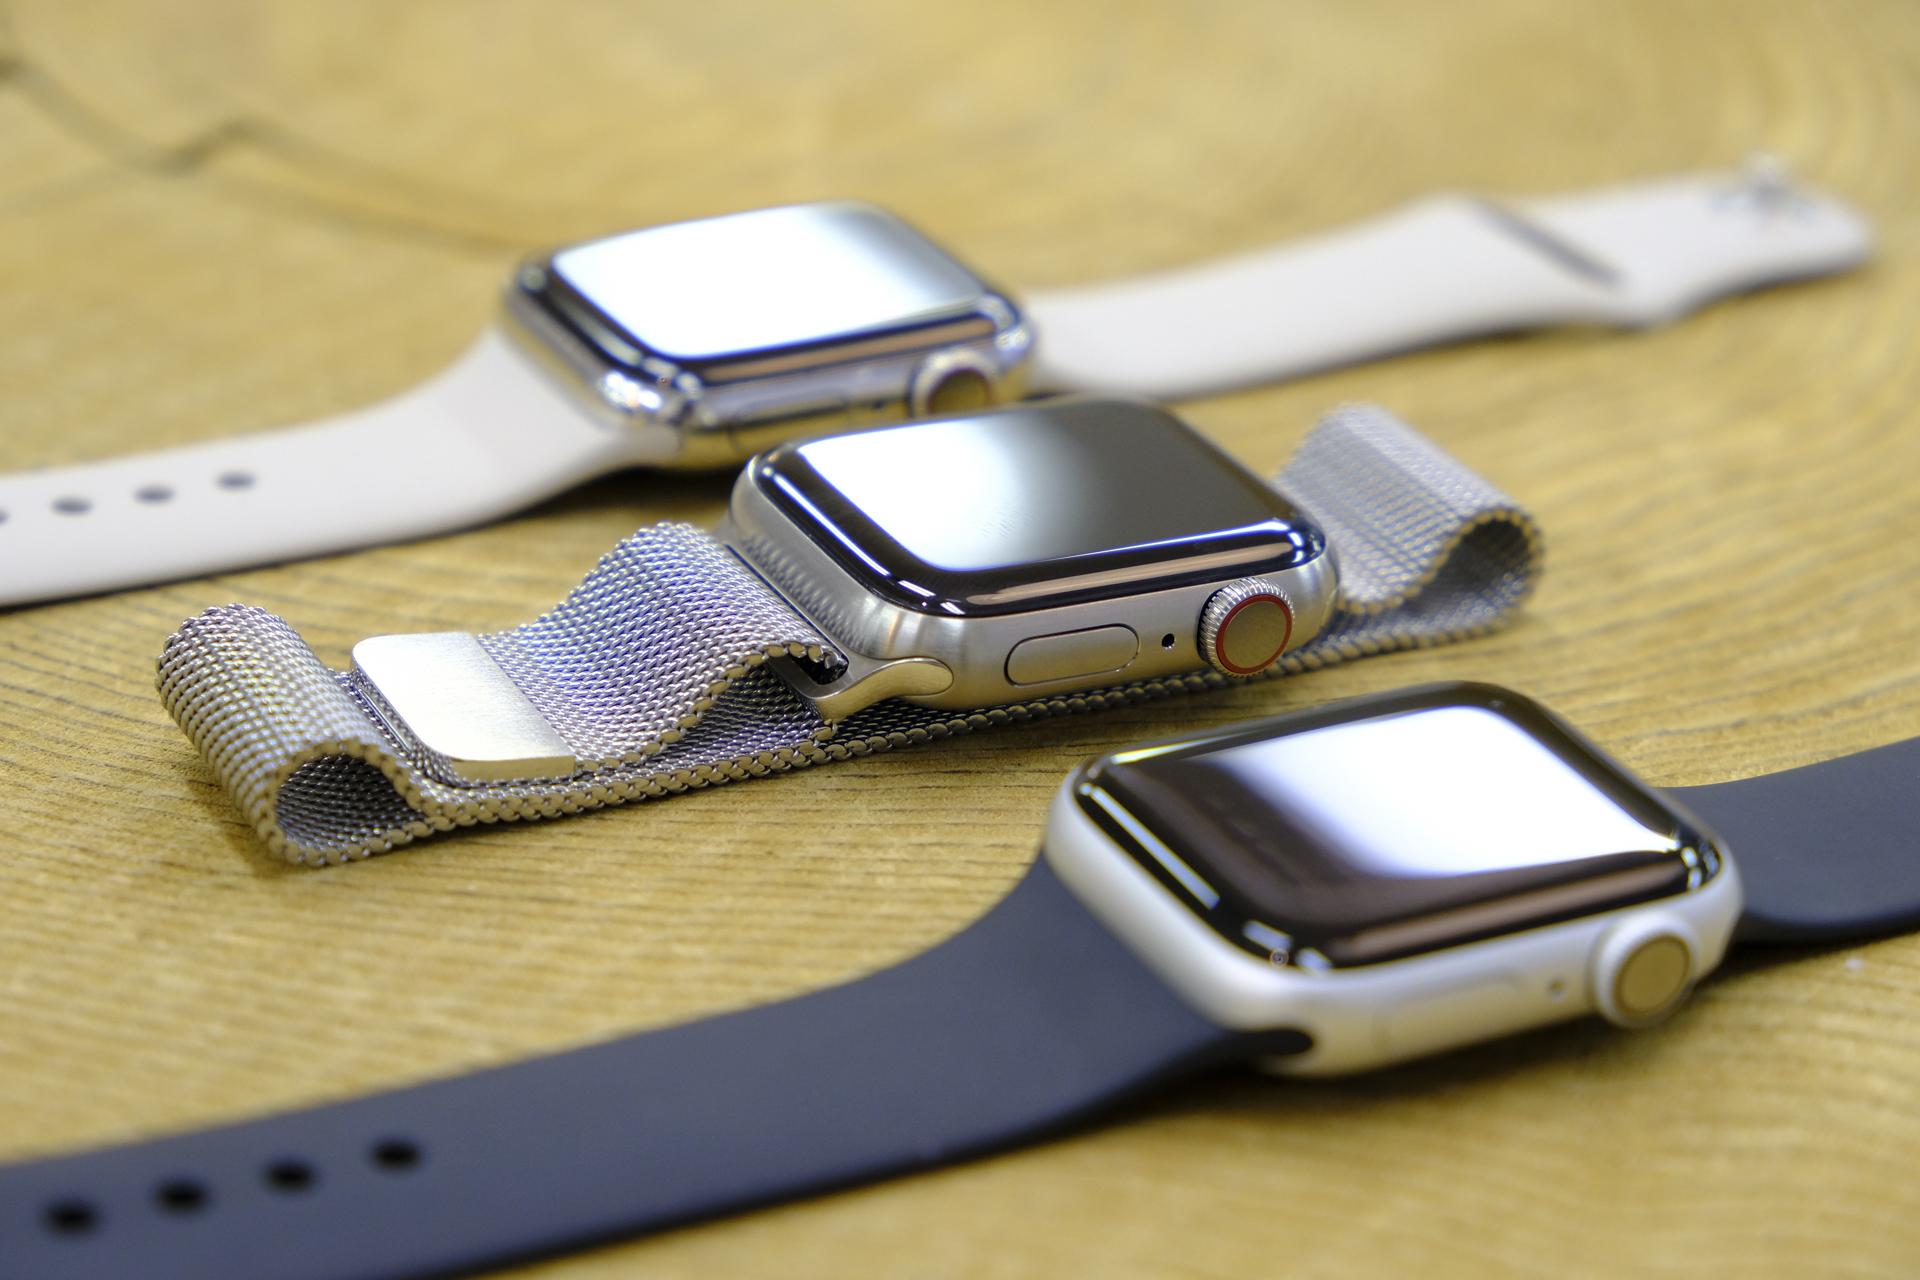 Apple Watch Series 5はチタンになったことで時計に近づいた。けれど